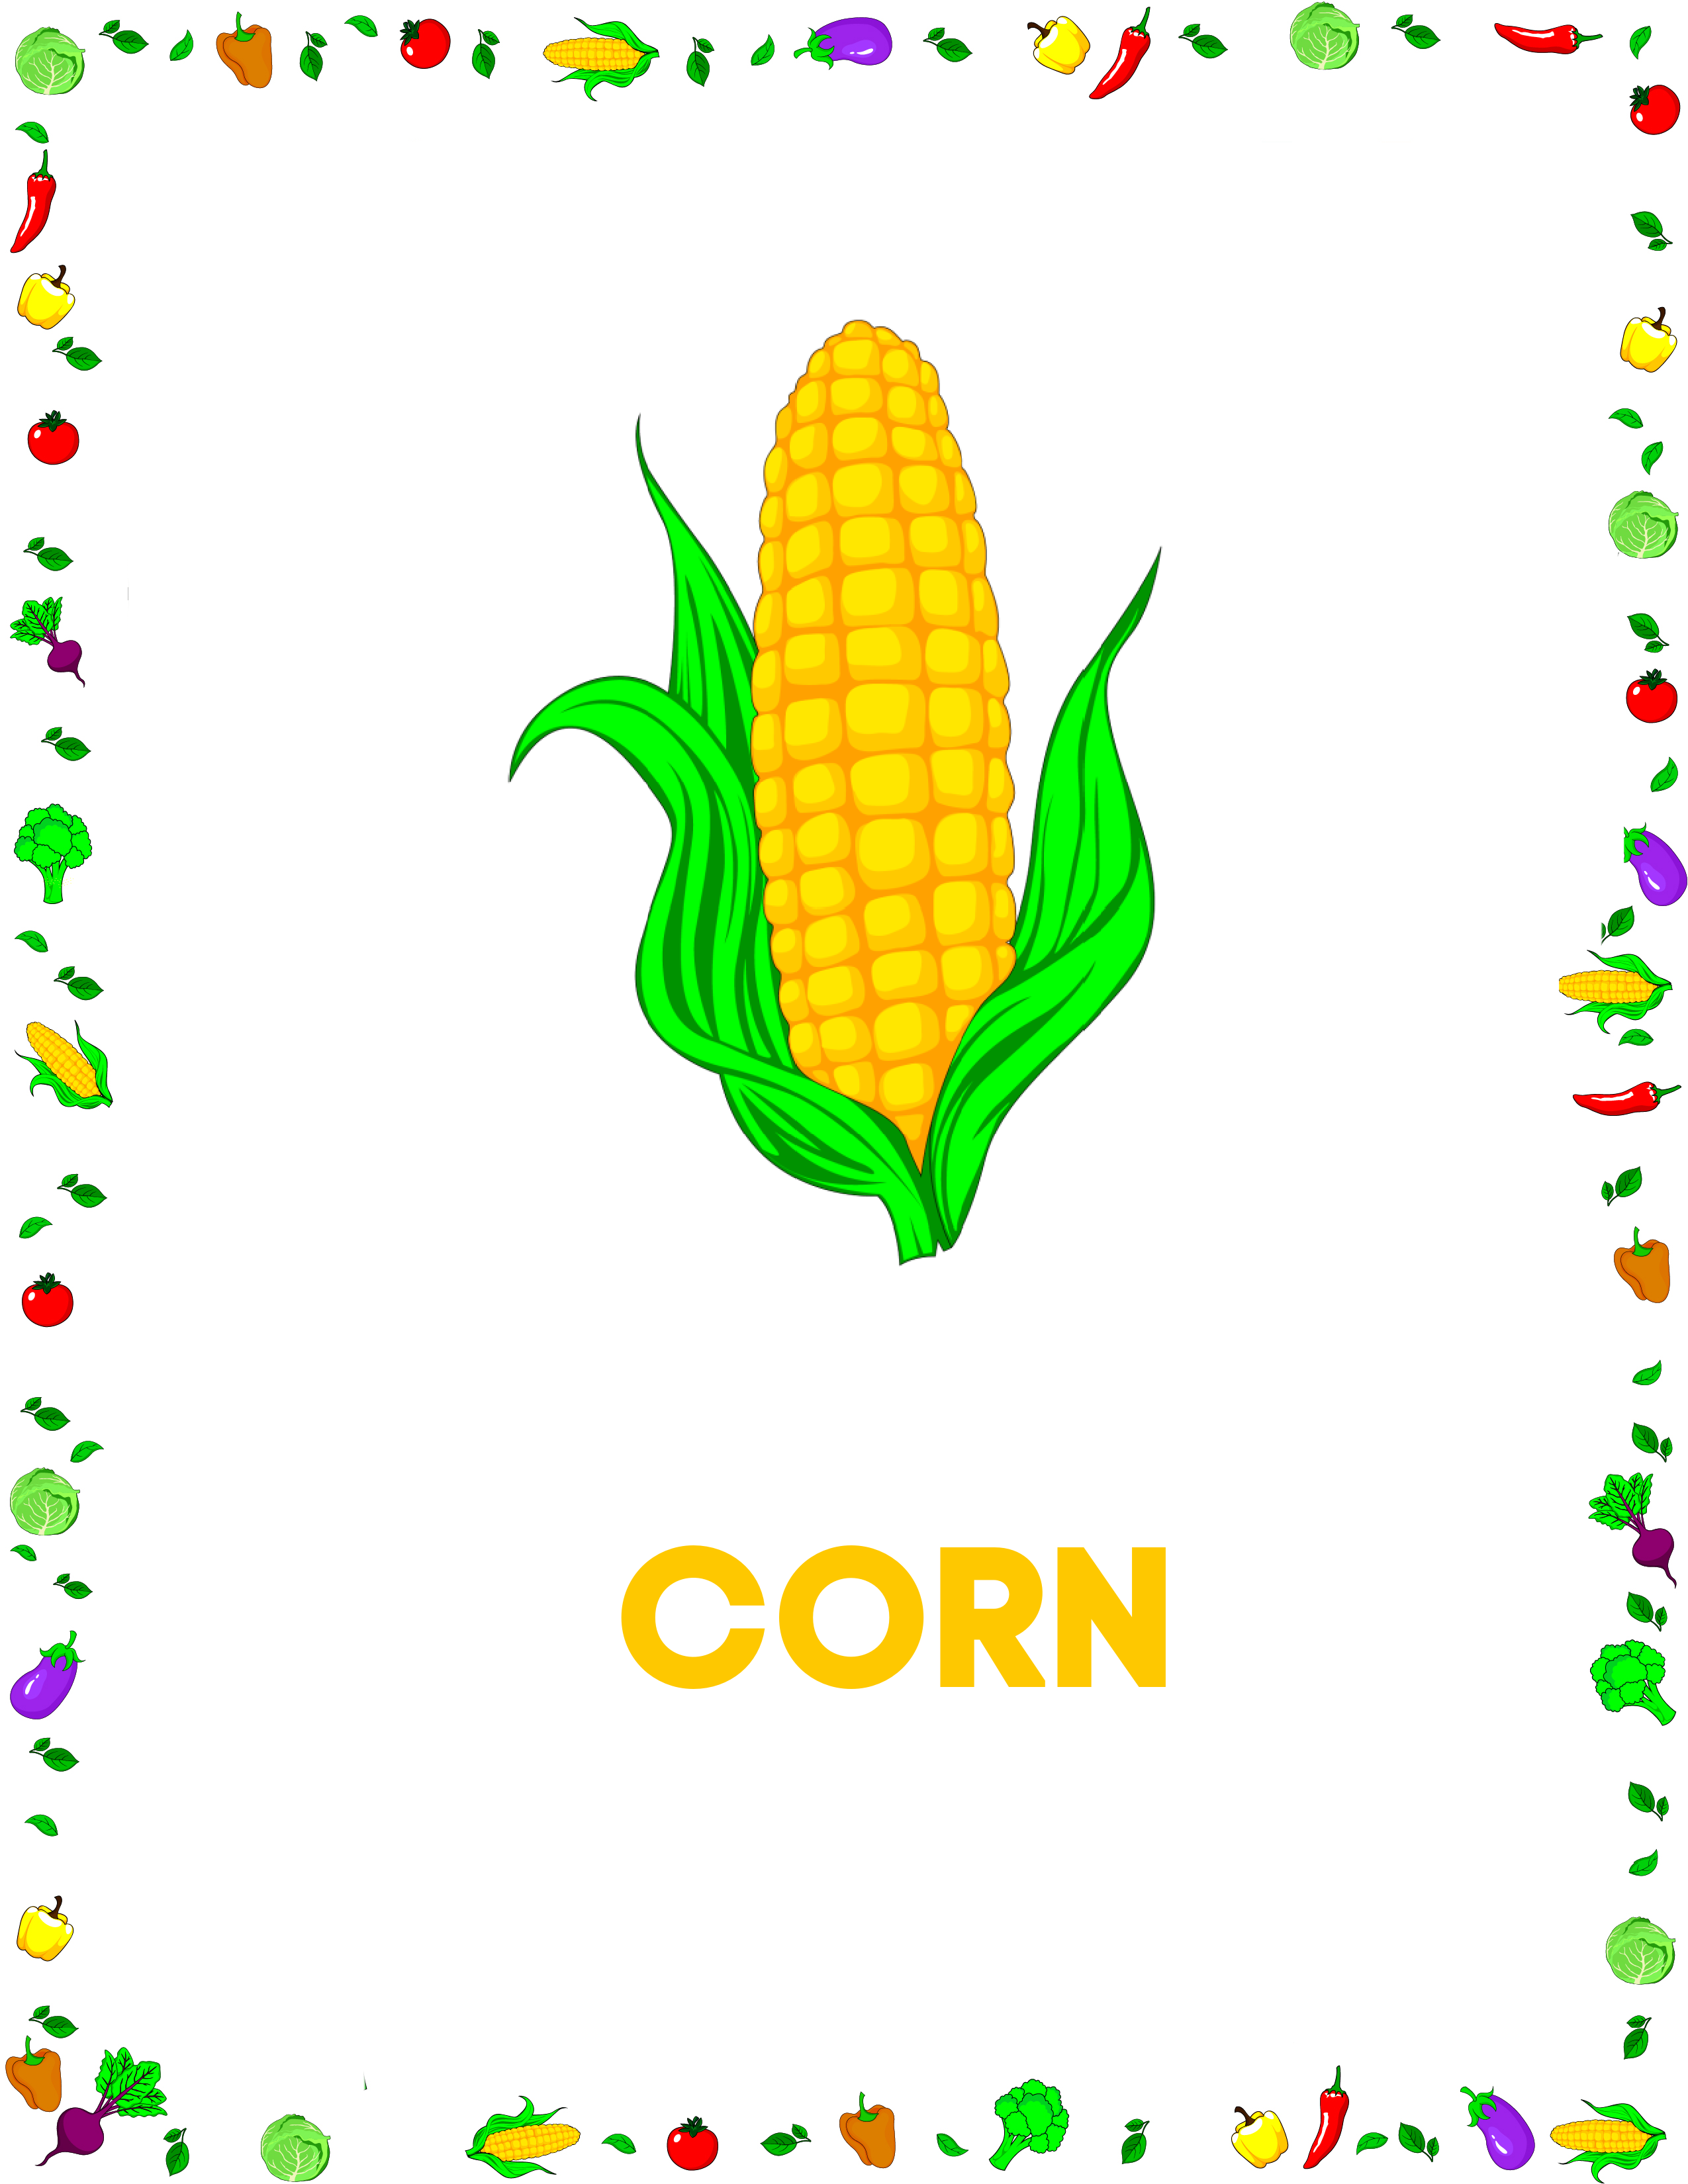 corn flashcards